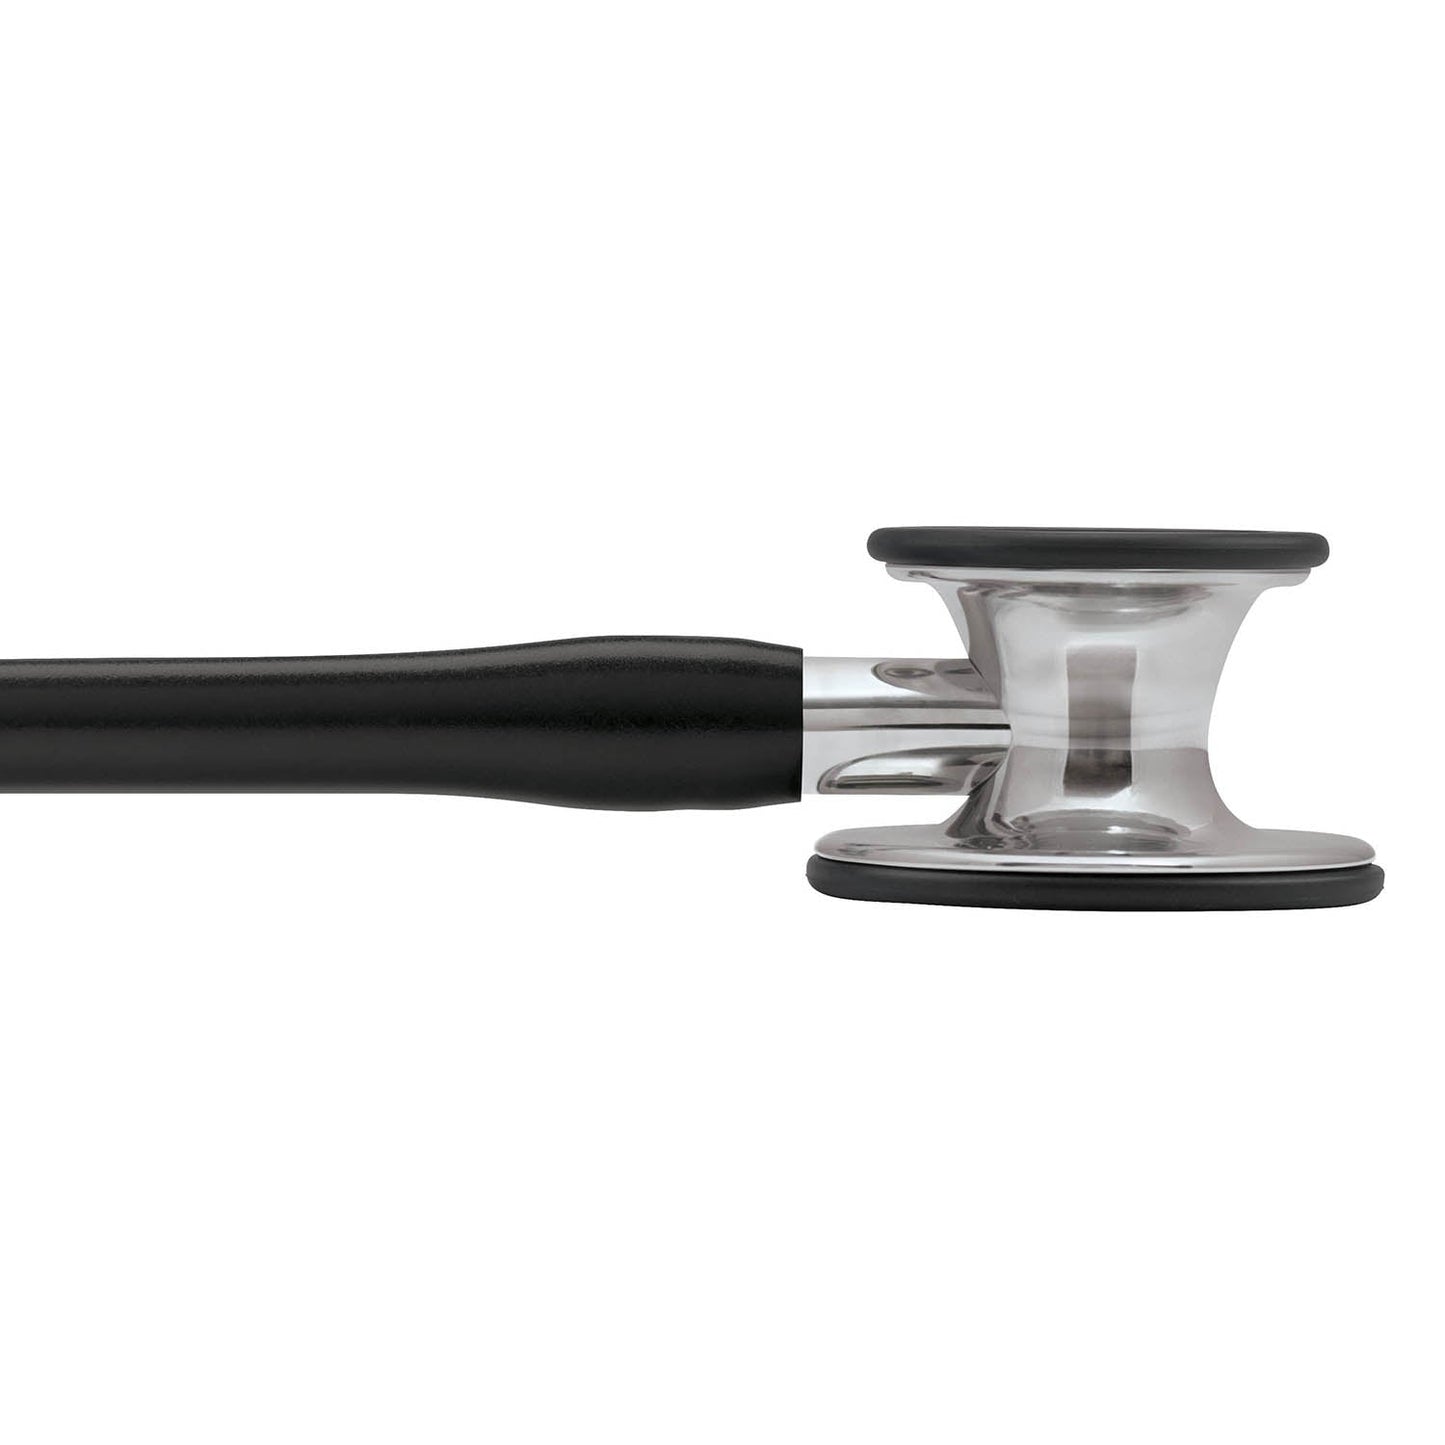 3M™ Littmann® Cardiology IV™ Stethoskop für die Diagnose, 6177, Bruststück und Schlauchanschluss hochglanzpoliert, schwarzer Schlauch, Ohrbügel aus Edelstahl, 69 cm